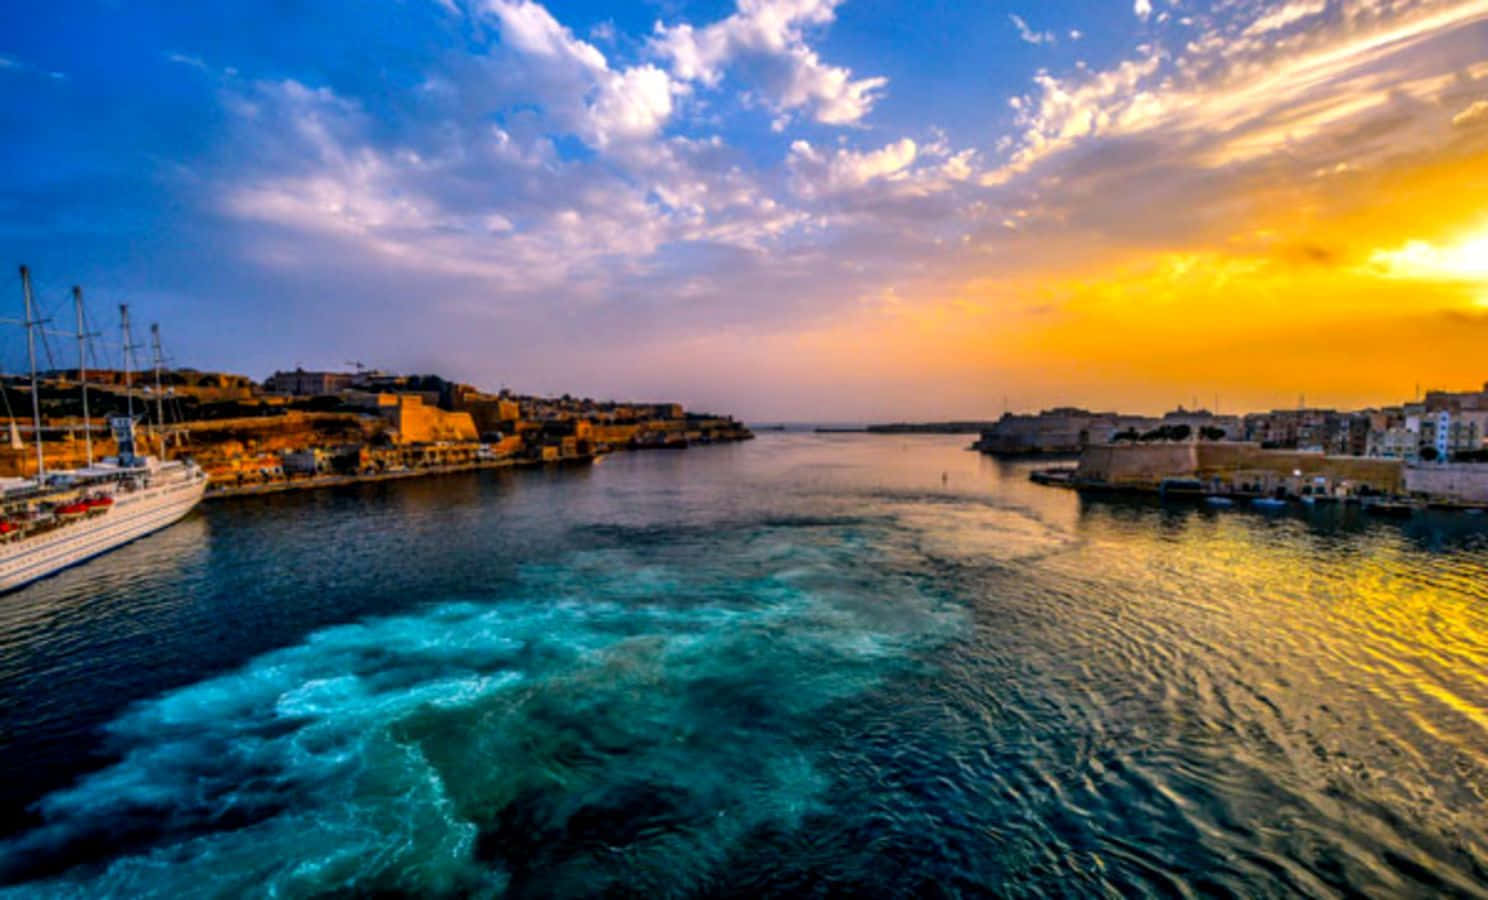 Beautiful sunset over the city of Valletta, Malta